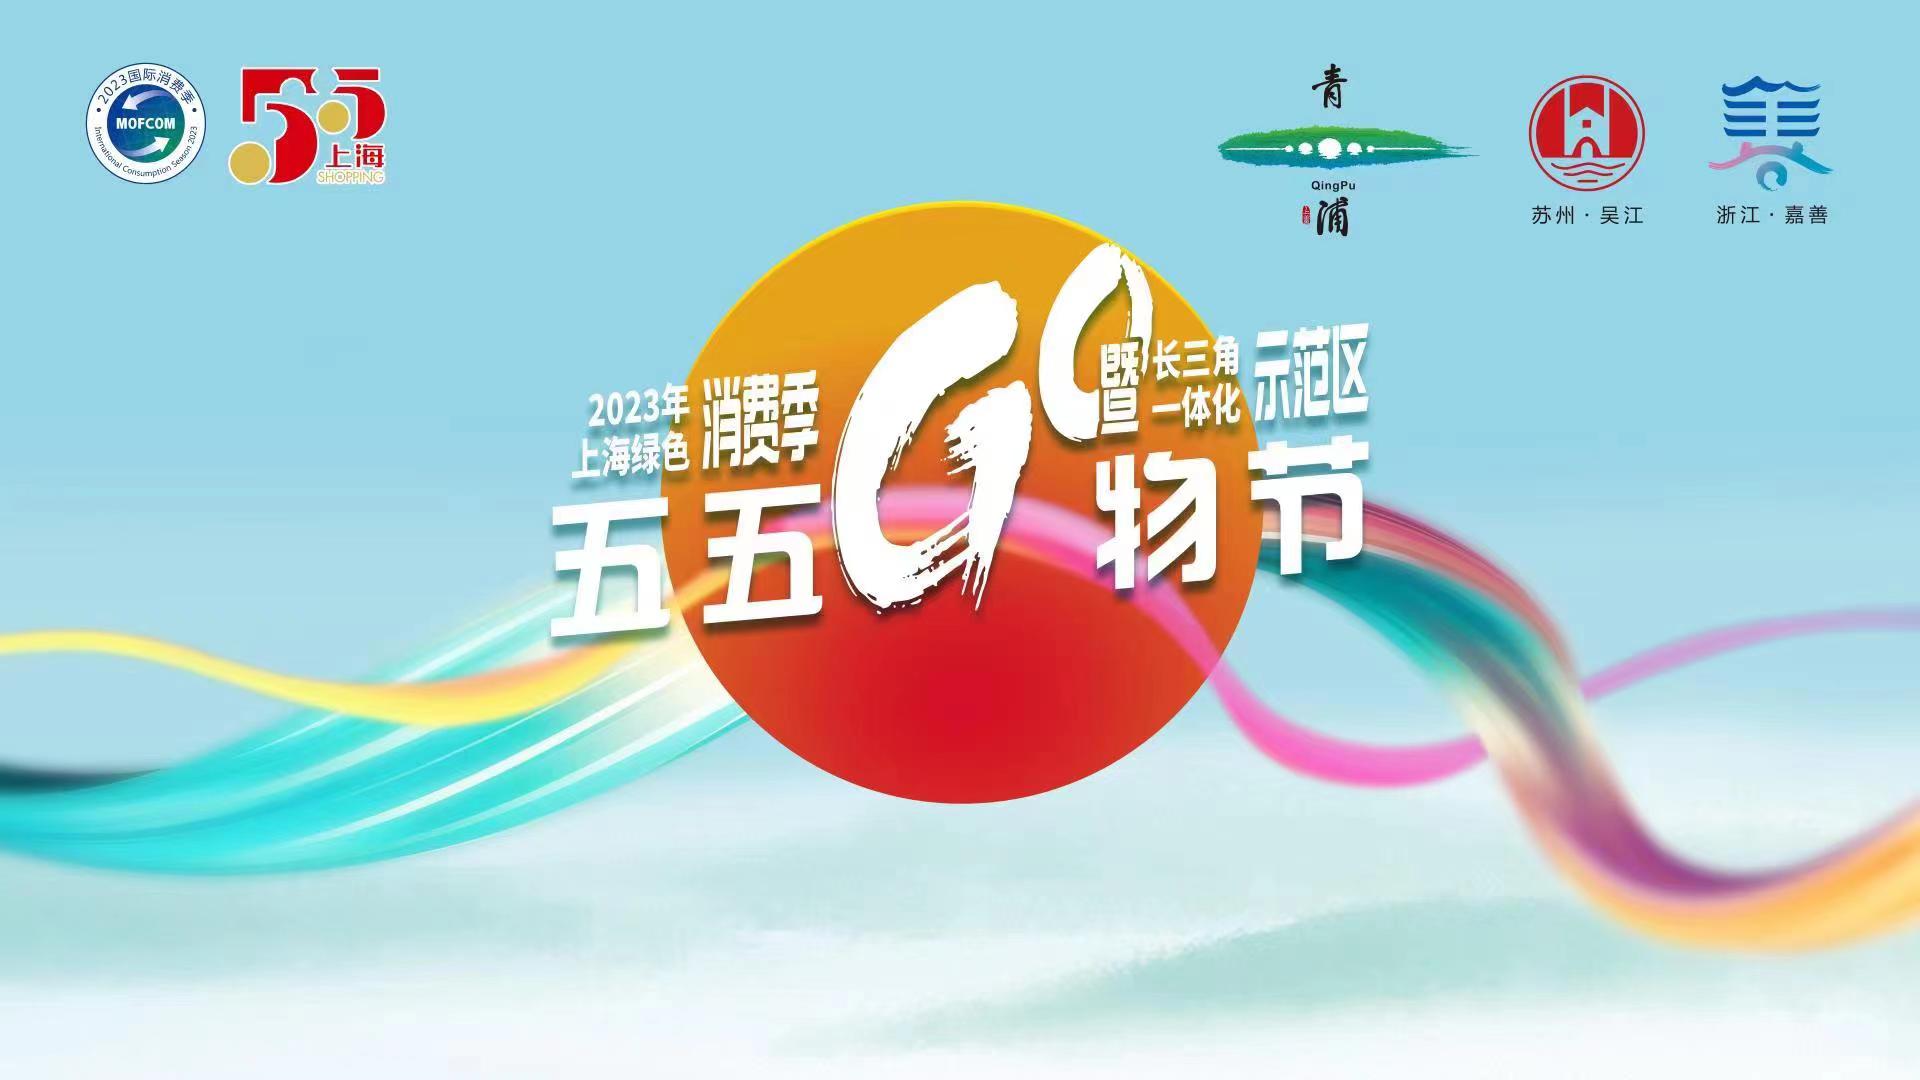 樂享新消費 長三角「五五購物節」將在滬青浦舉行